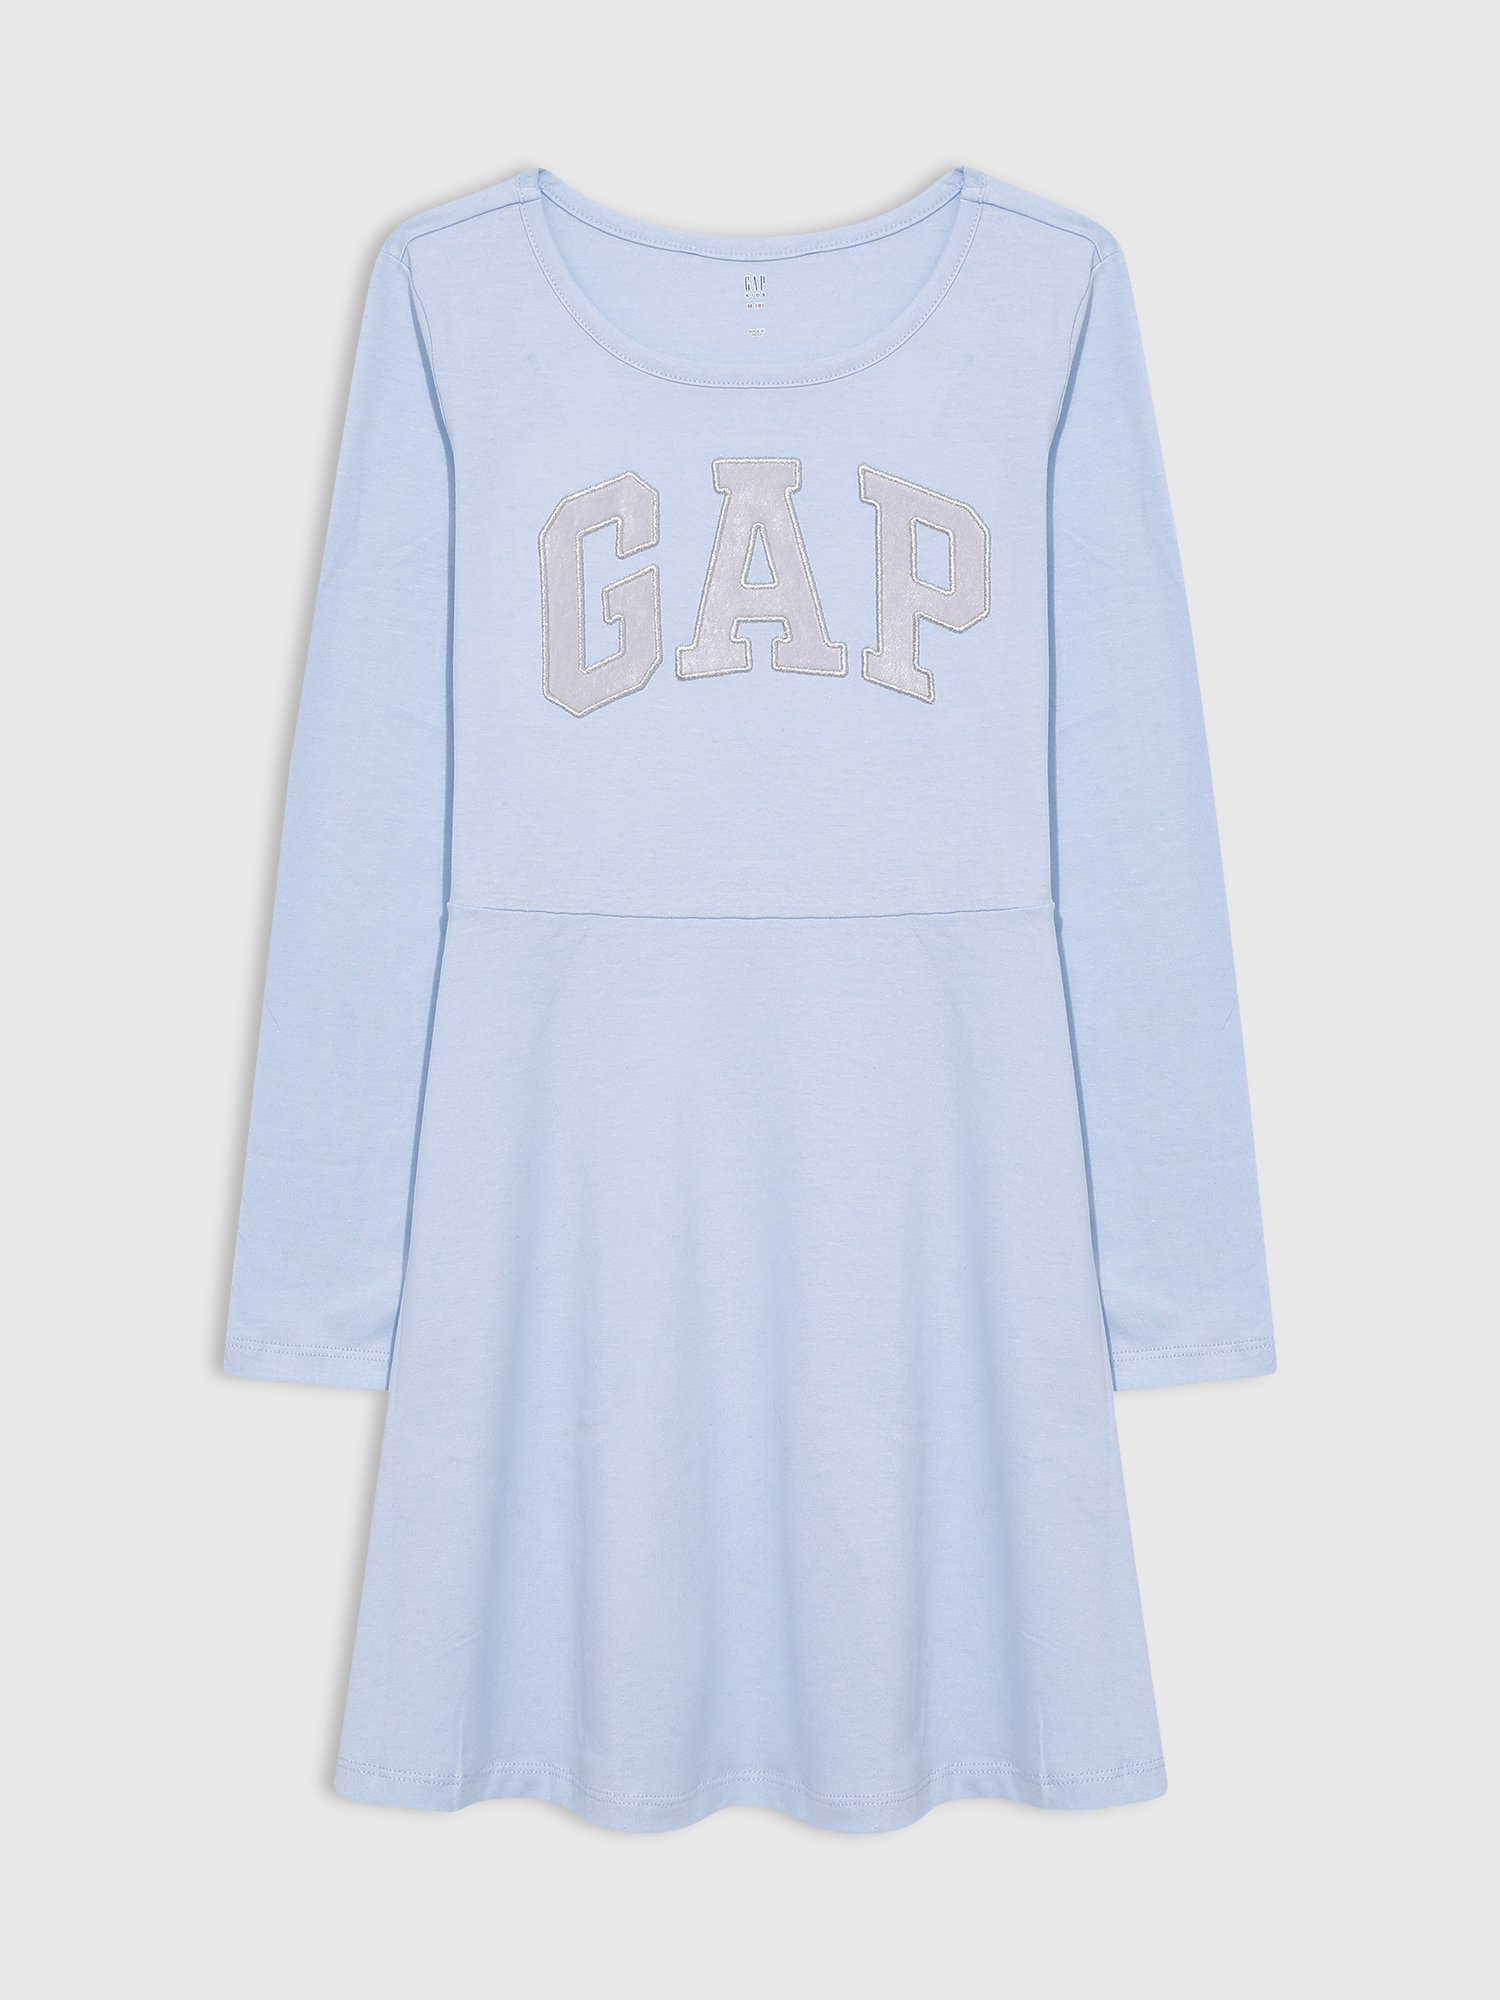 Gap Logo Elbise product image